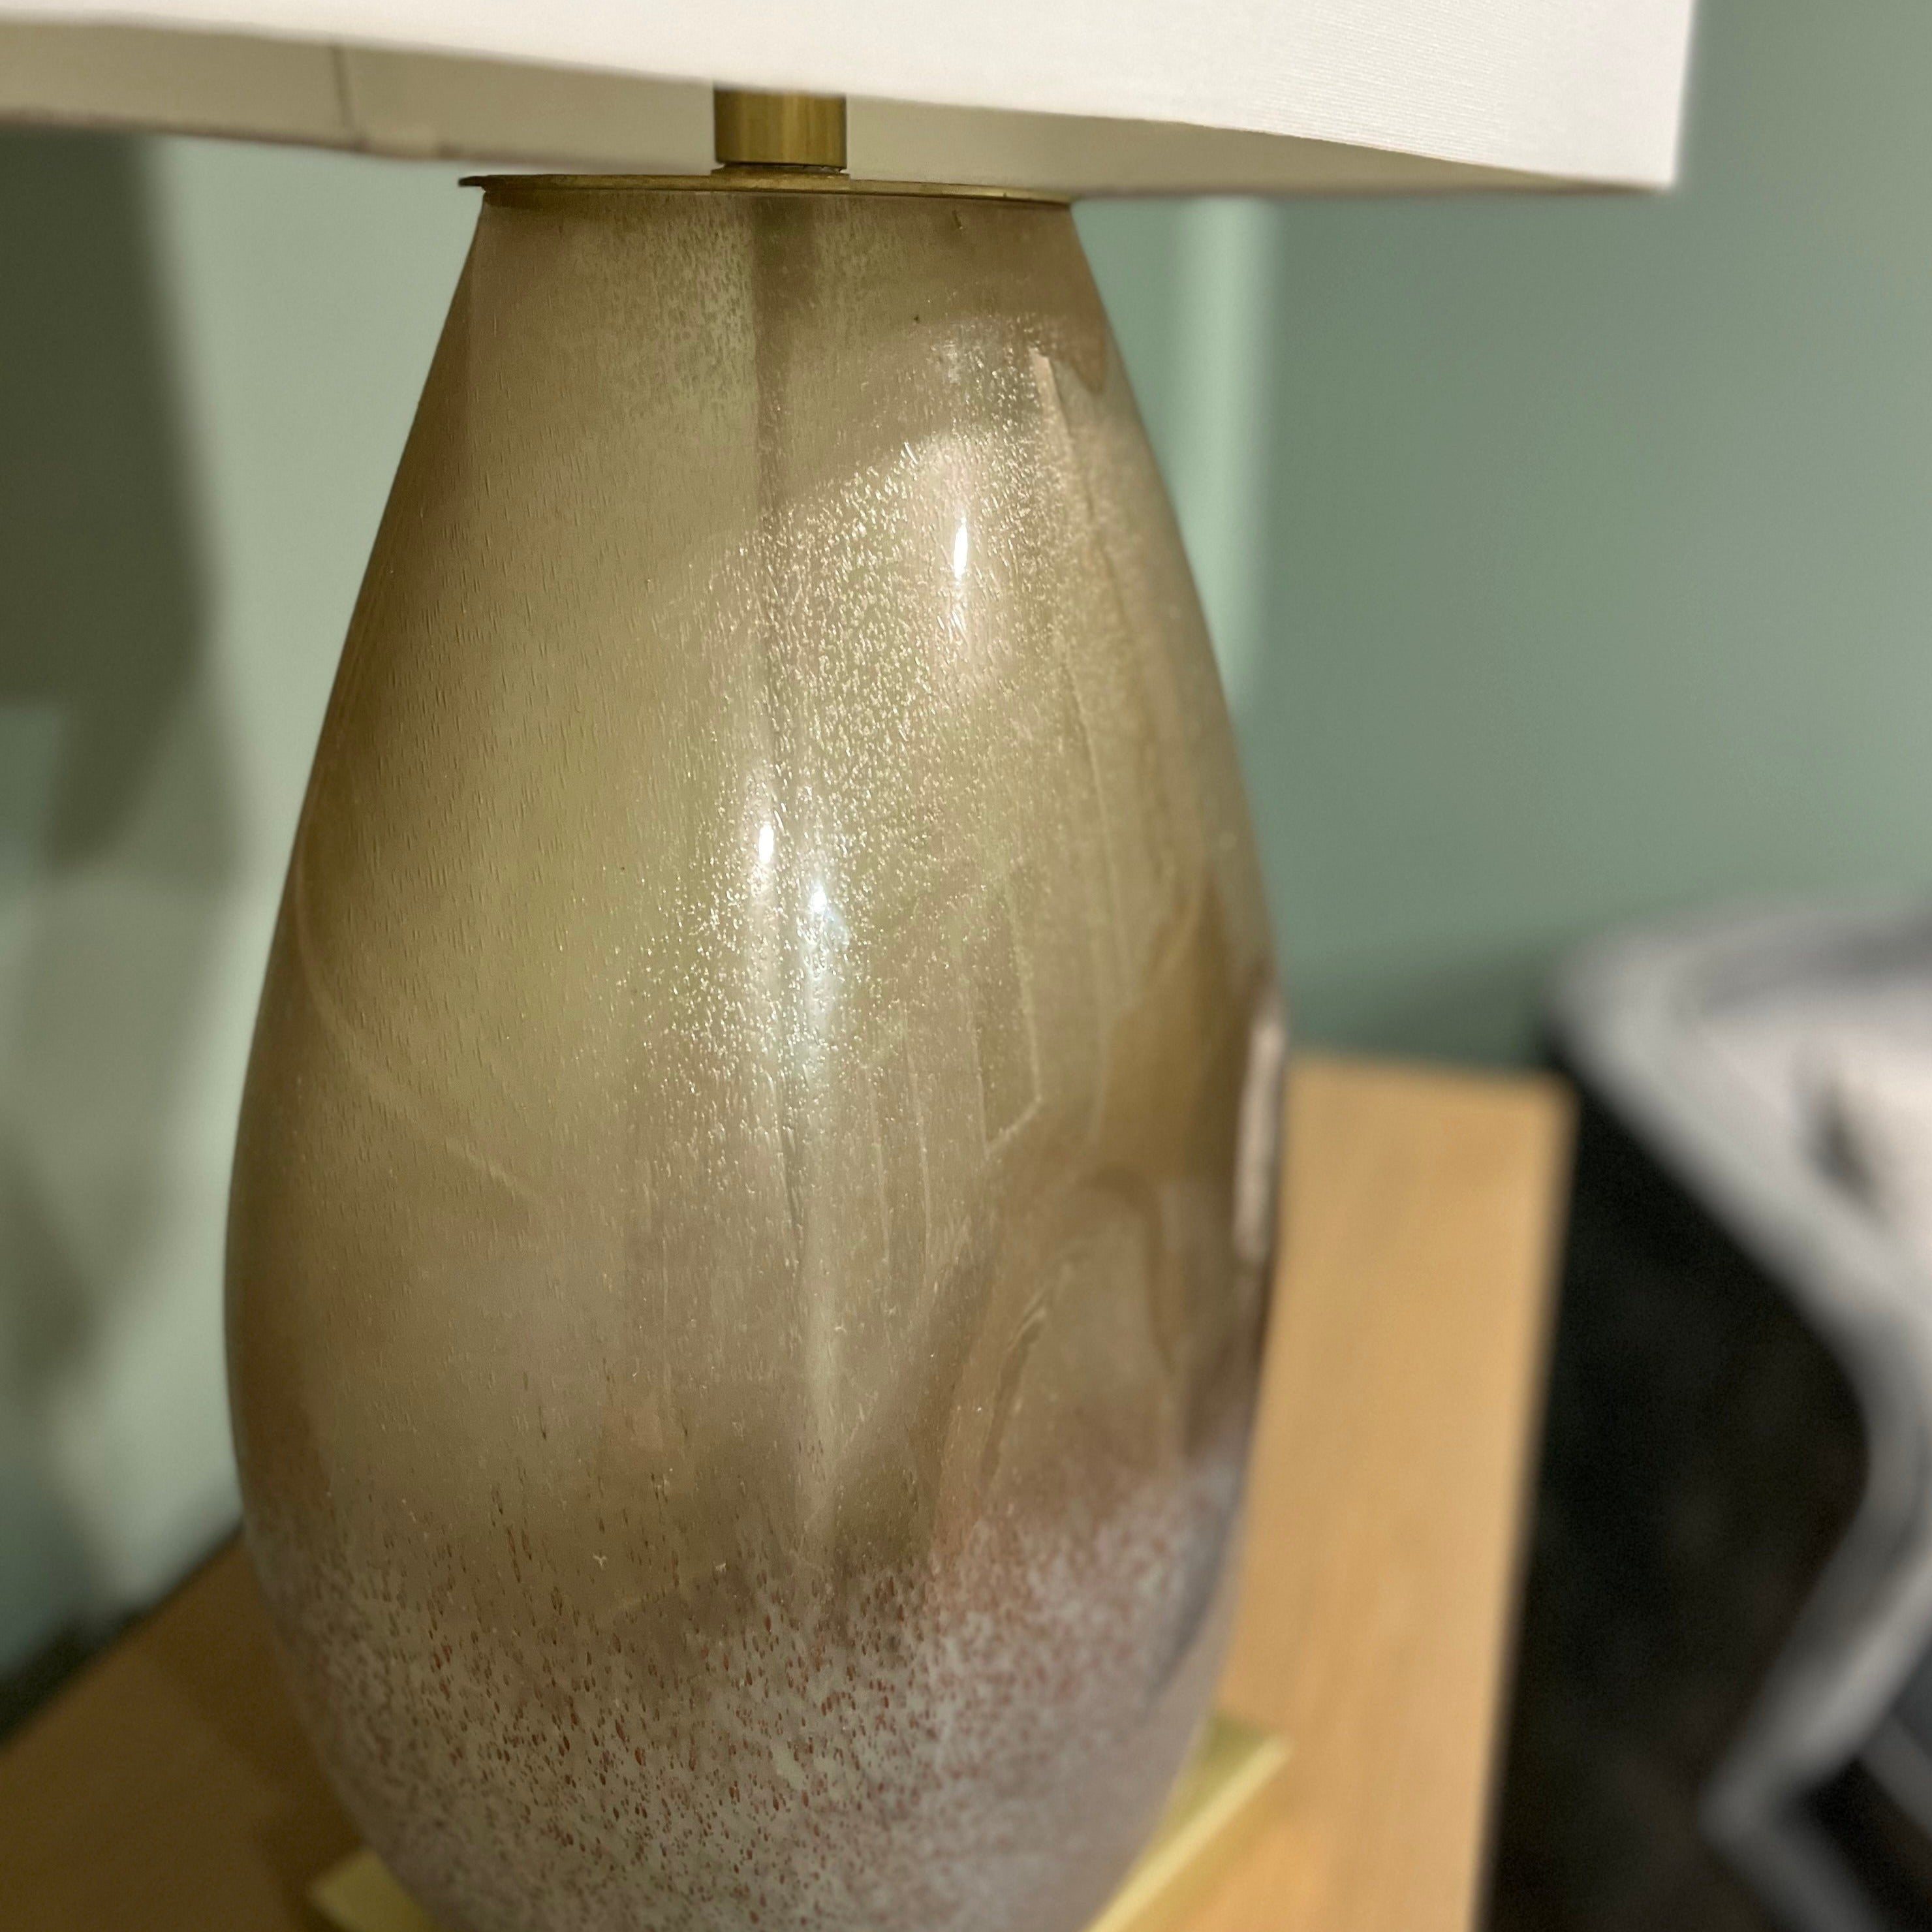 Soho Table Lamp